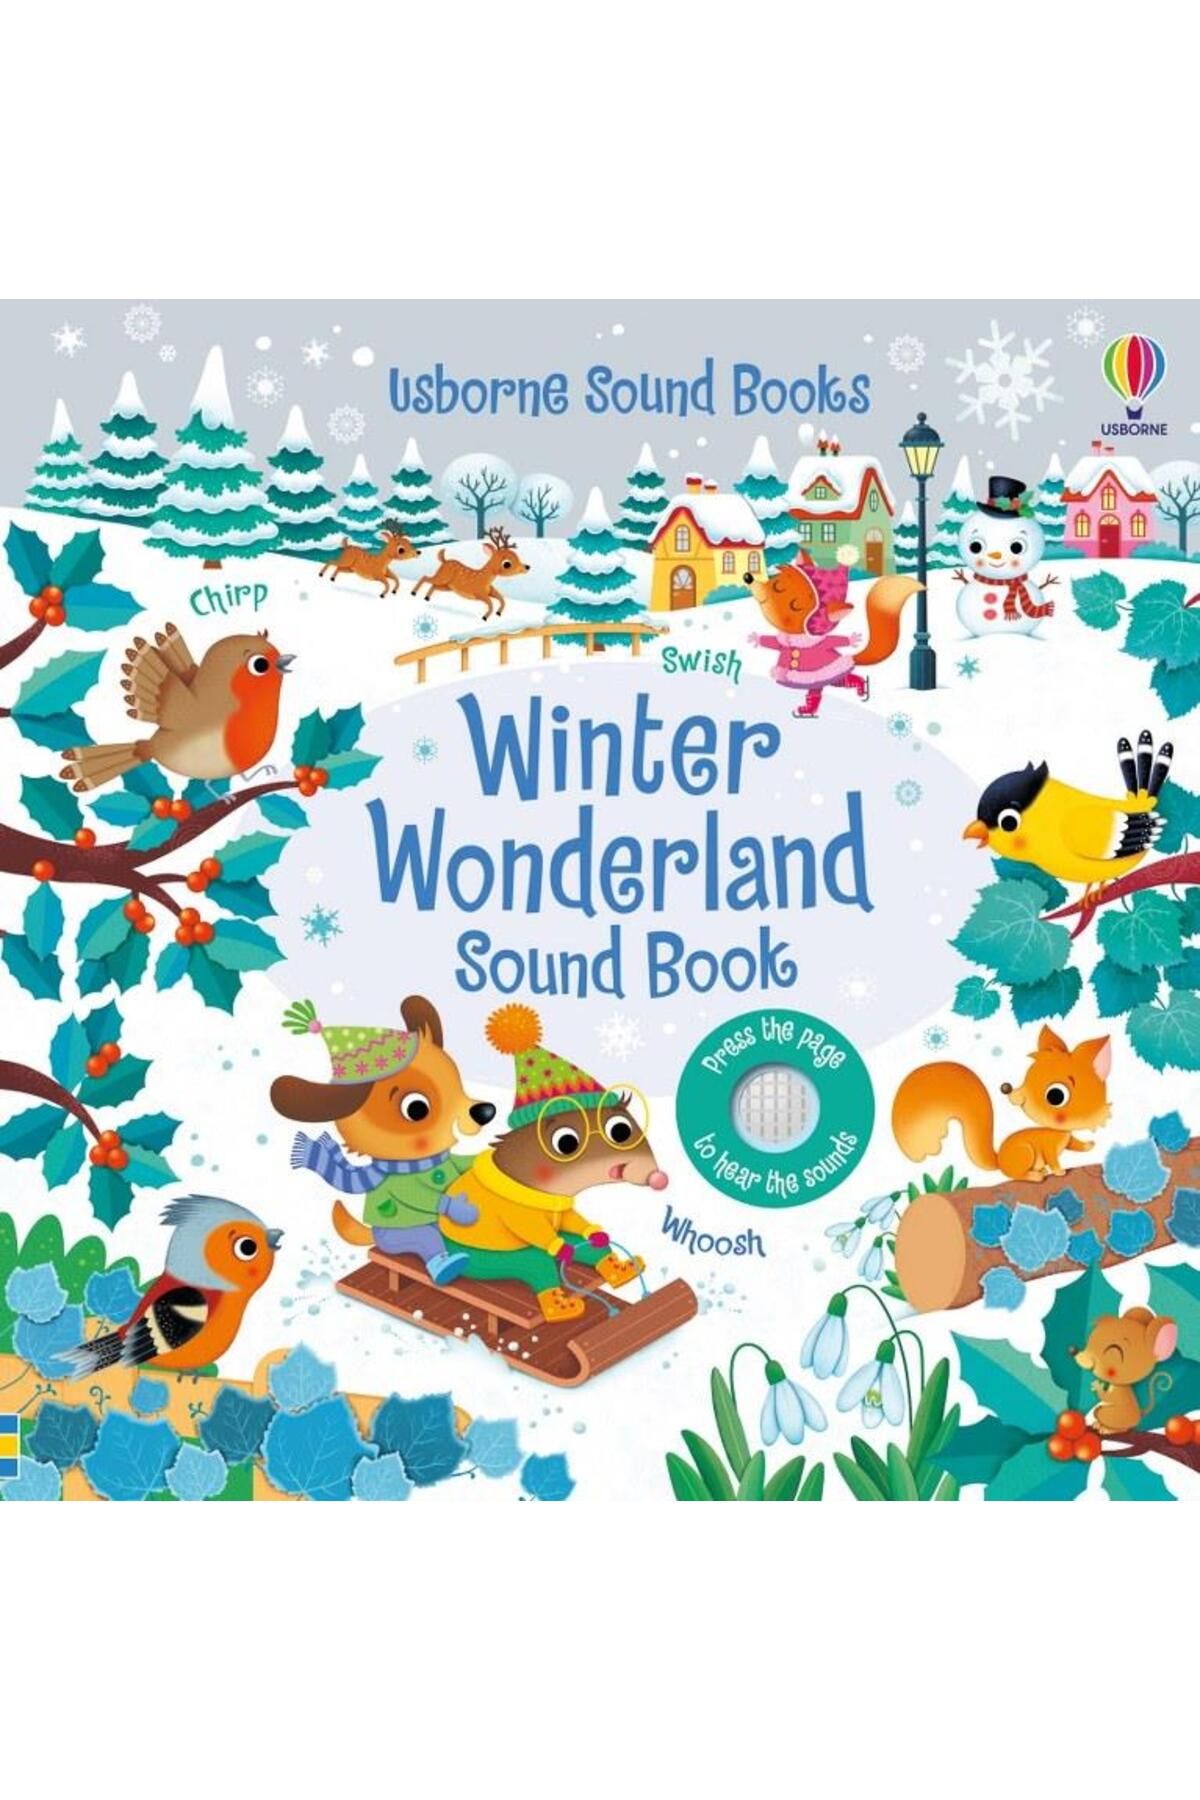 Usborne Sound Books - Winter Wonderland Sound Book